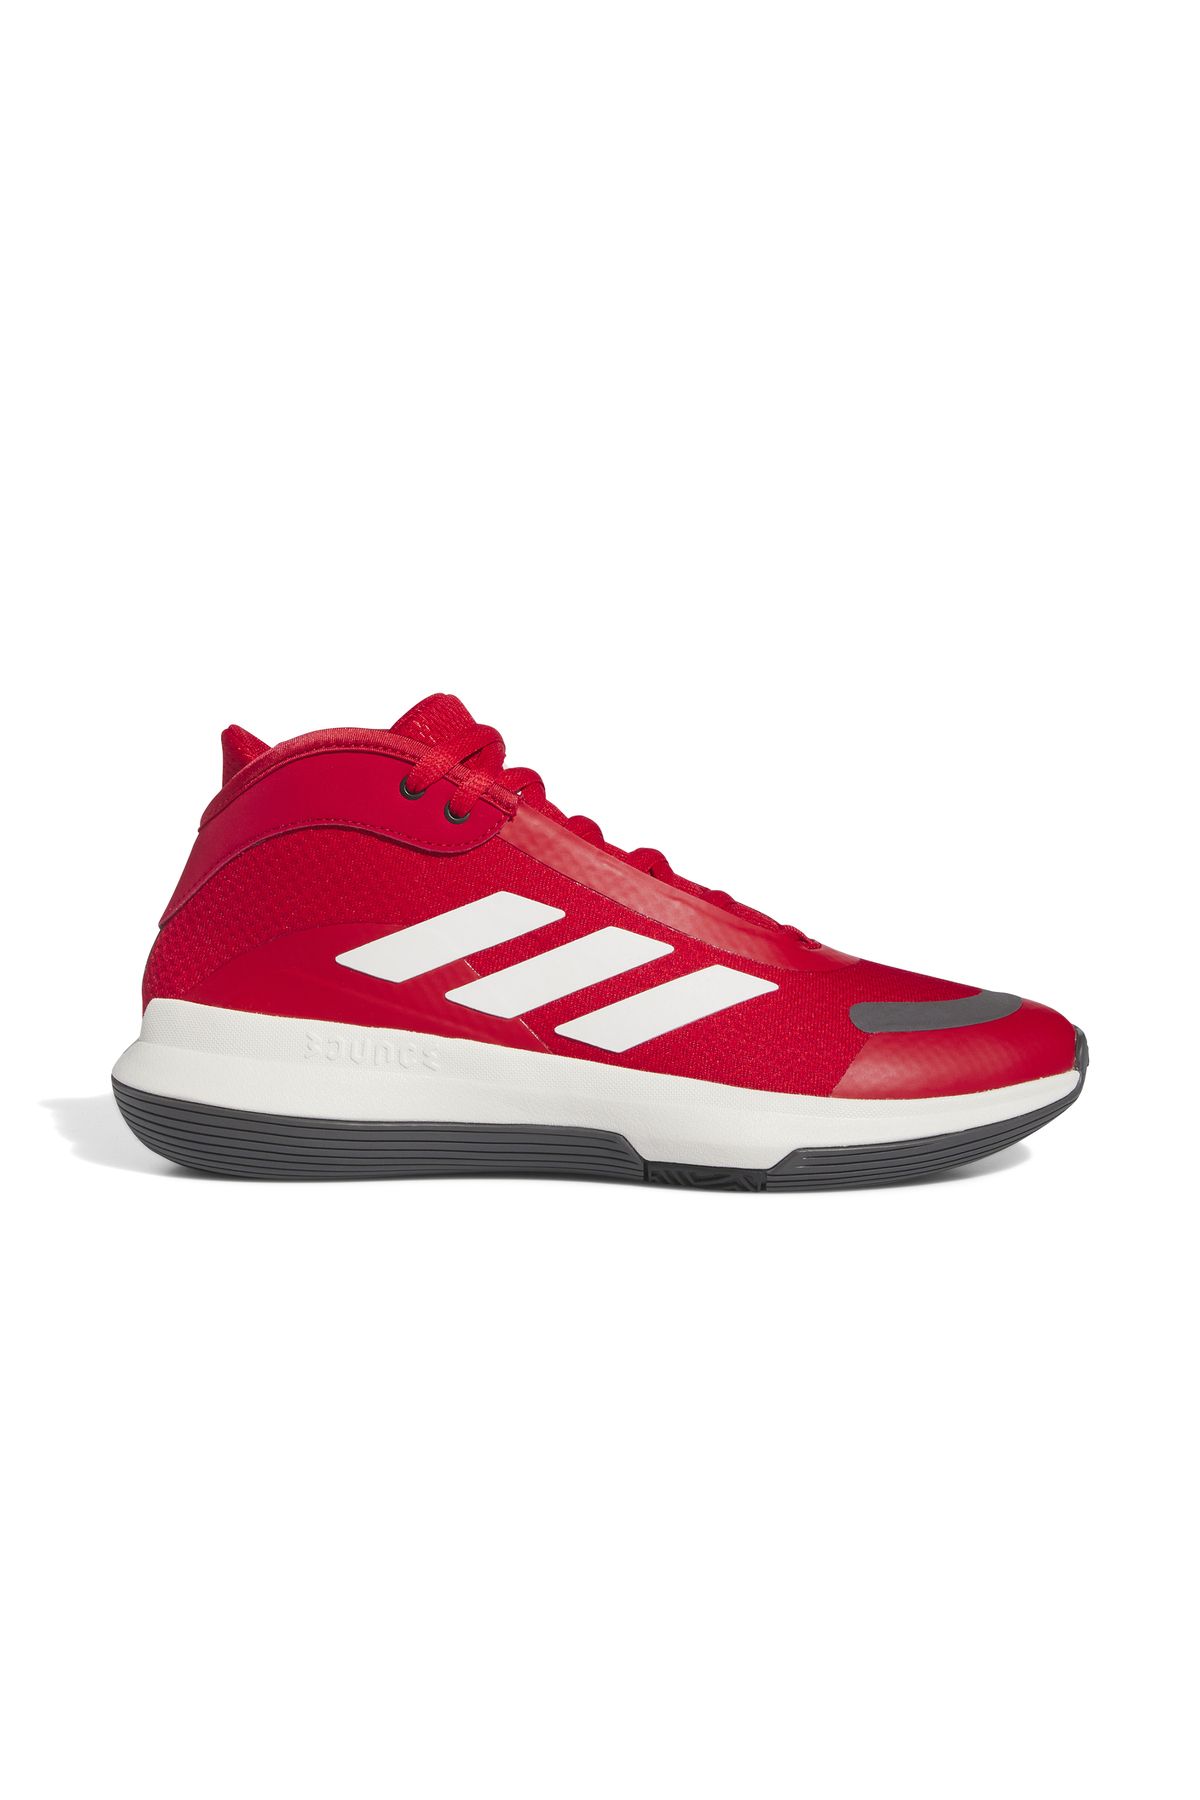 adidas Bounce Legends Erkek Basketbol Ayakkabısı Kırmızı